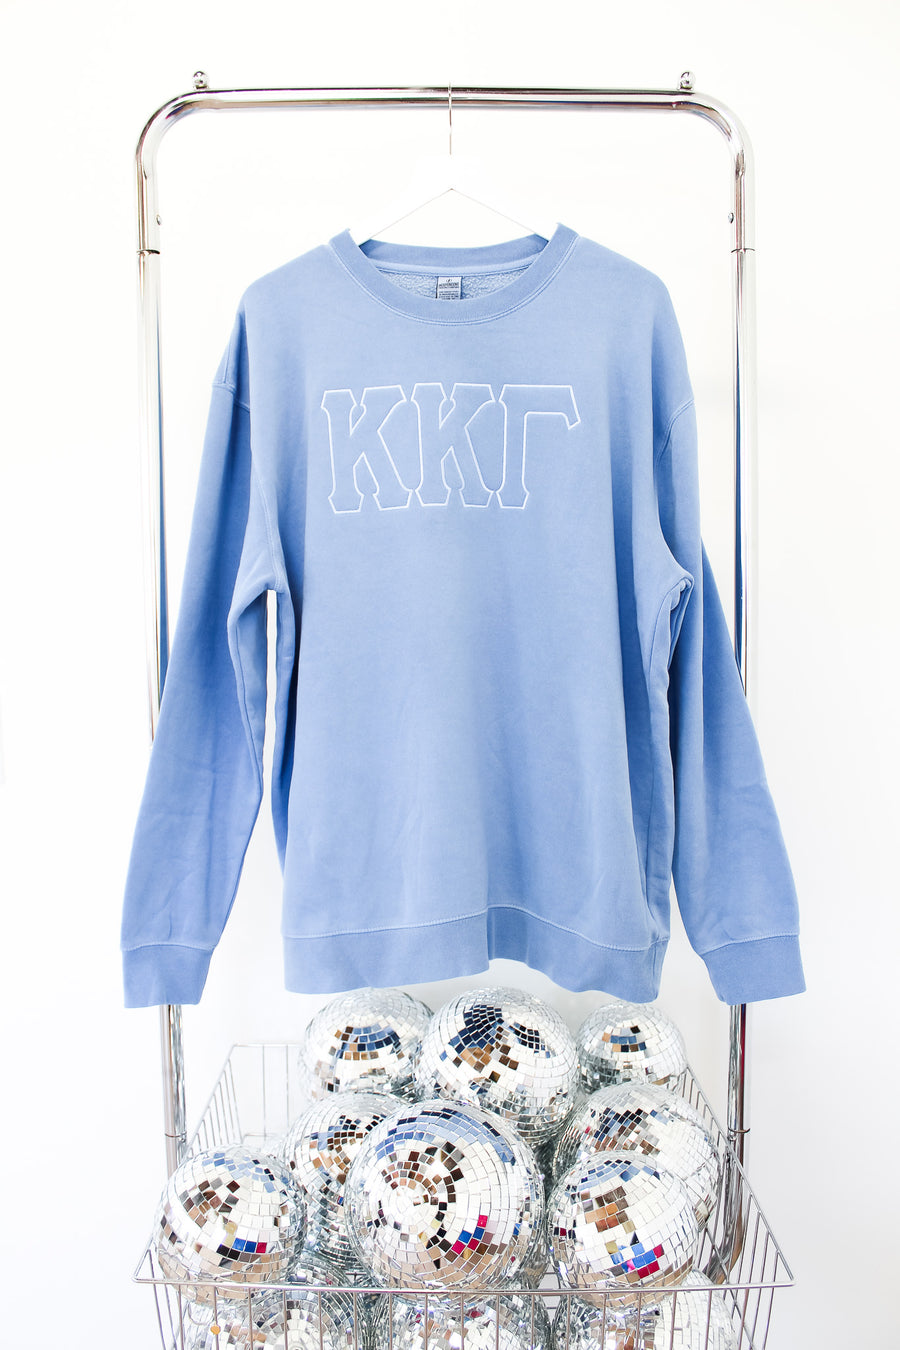 Kappa Kappa Gamma Suzette Embroidered Crew- XL LT BLUE